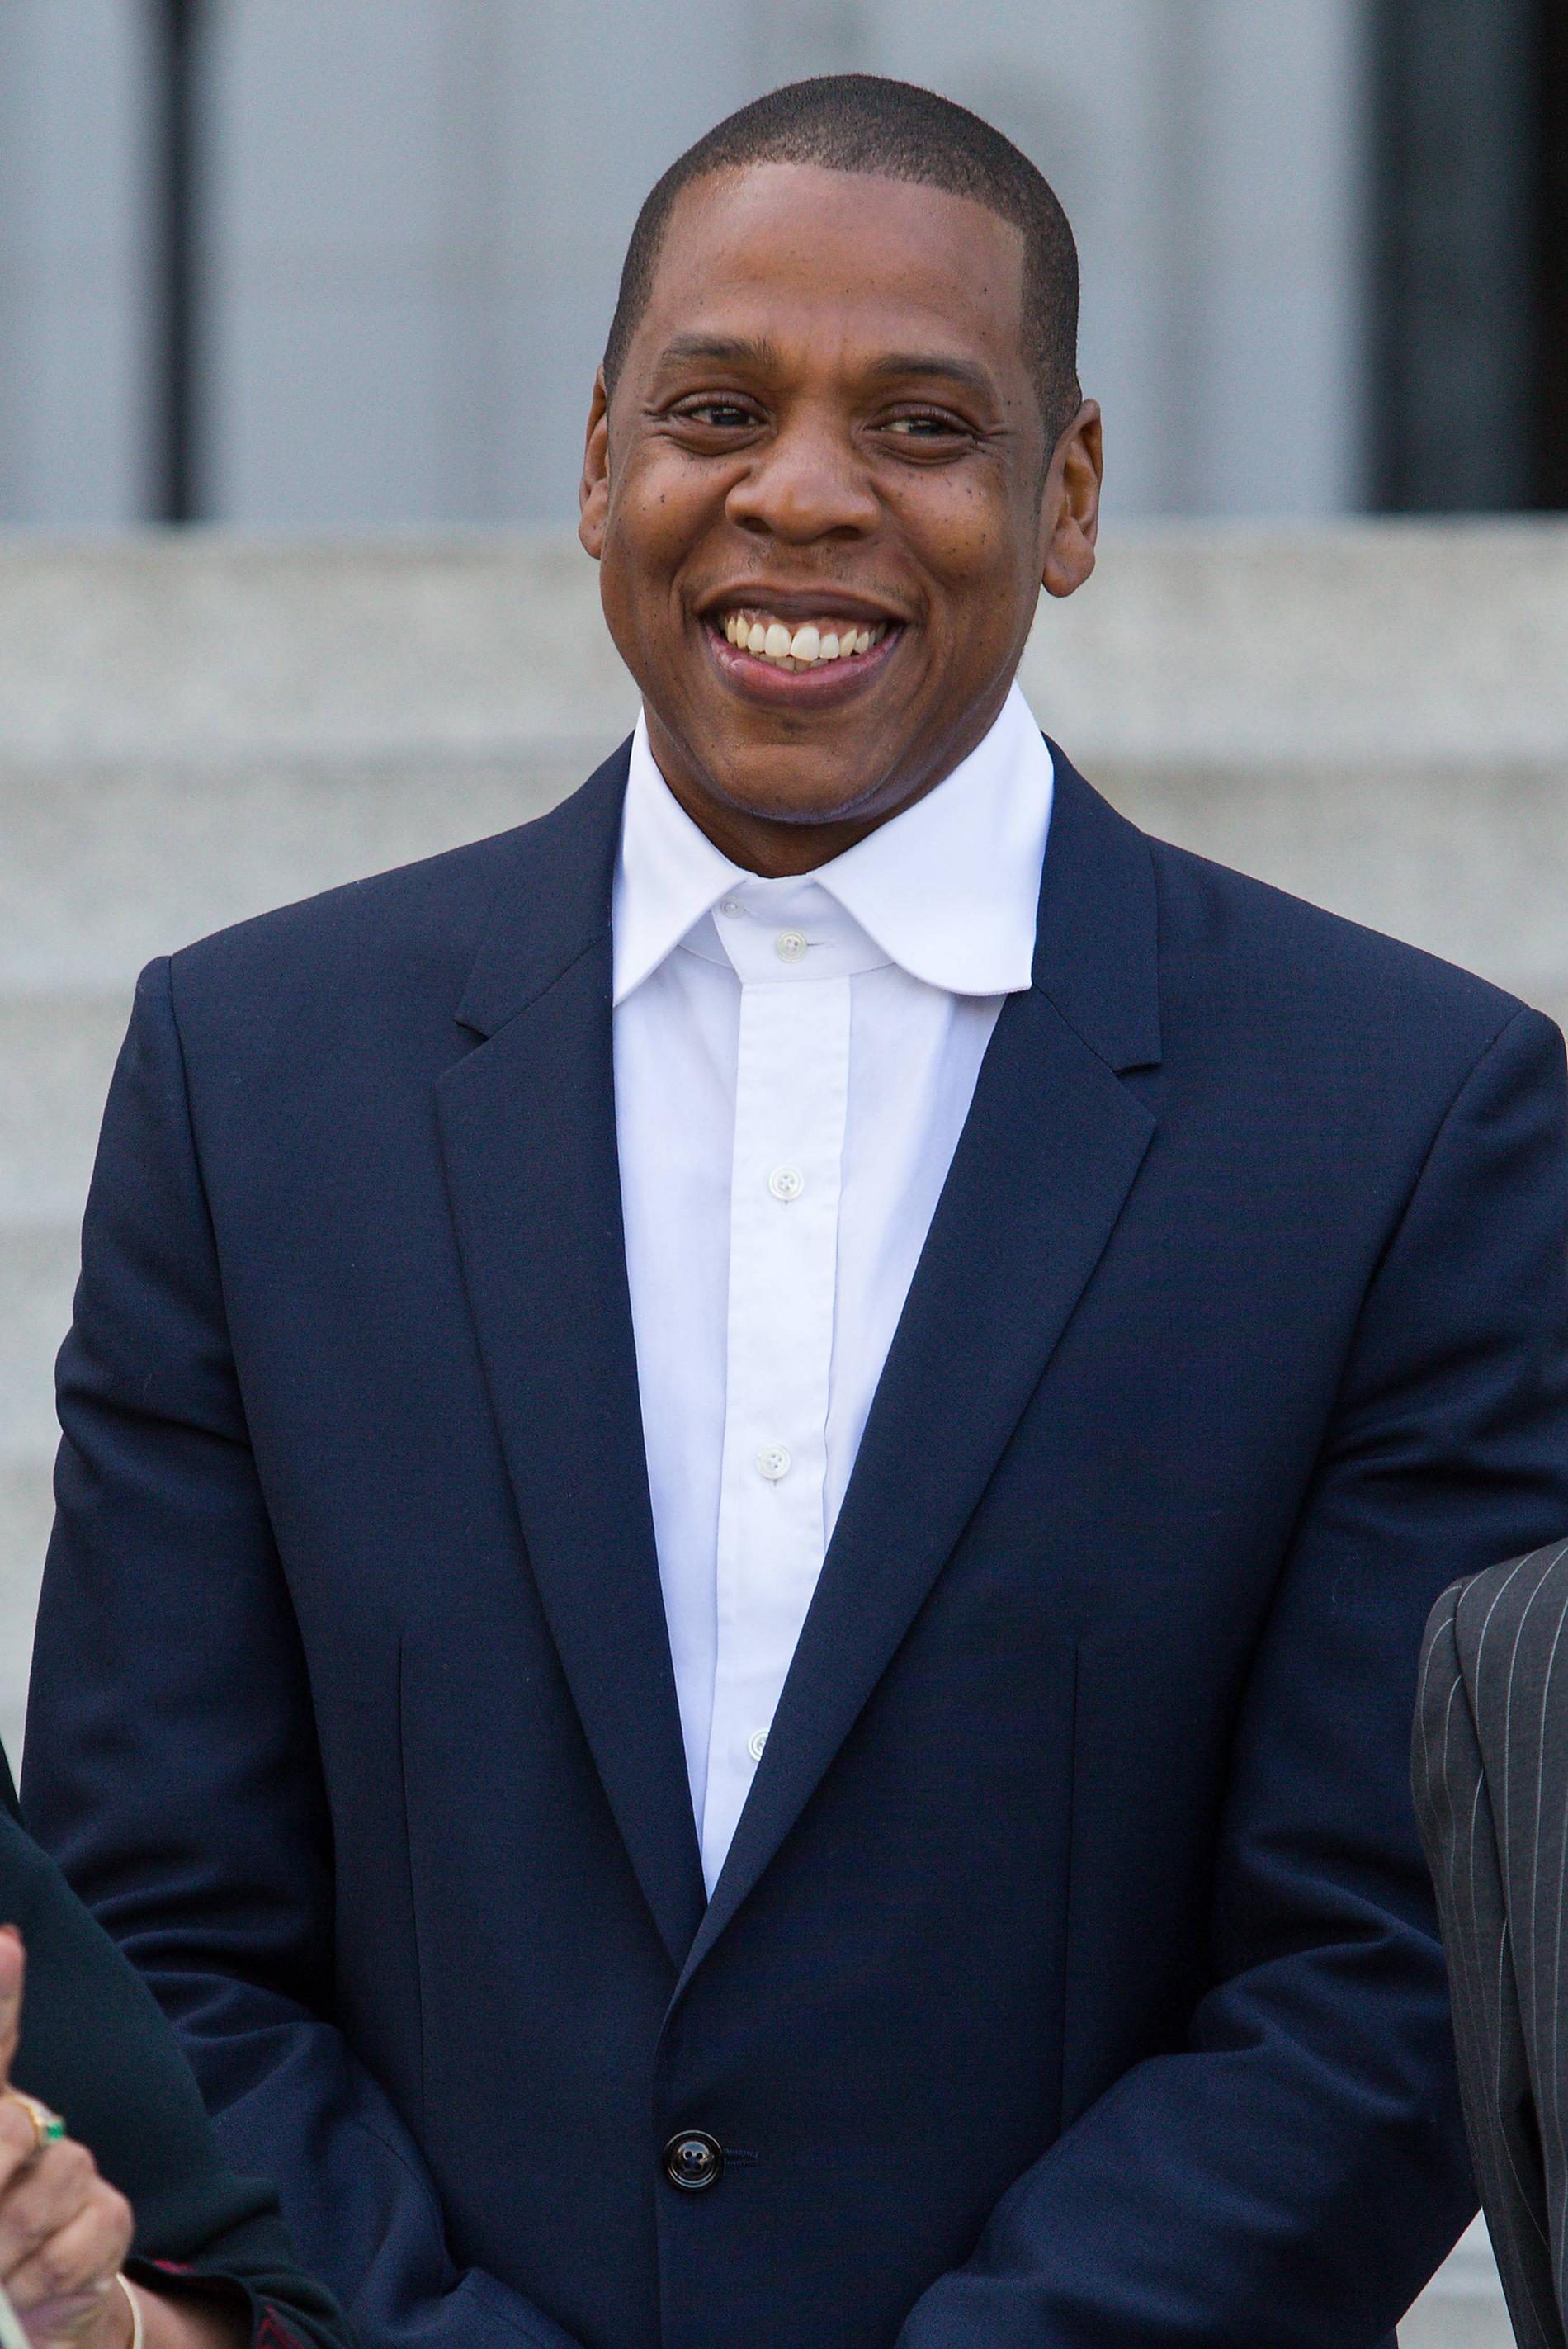 MUSIKMOGUL Jay Z har redan skivbolag och kläder på sitt cv - nu lanserar han musikstreamingtjänsten Tidal.